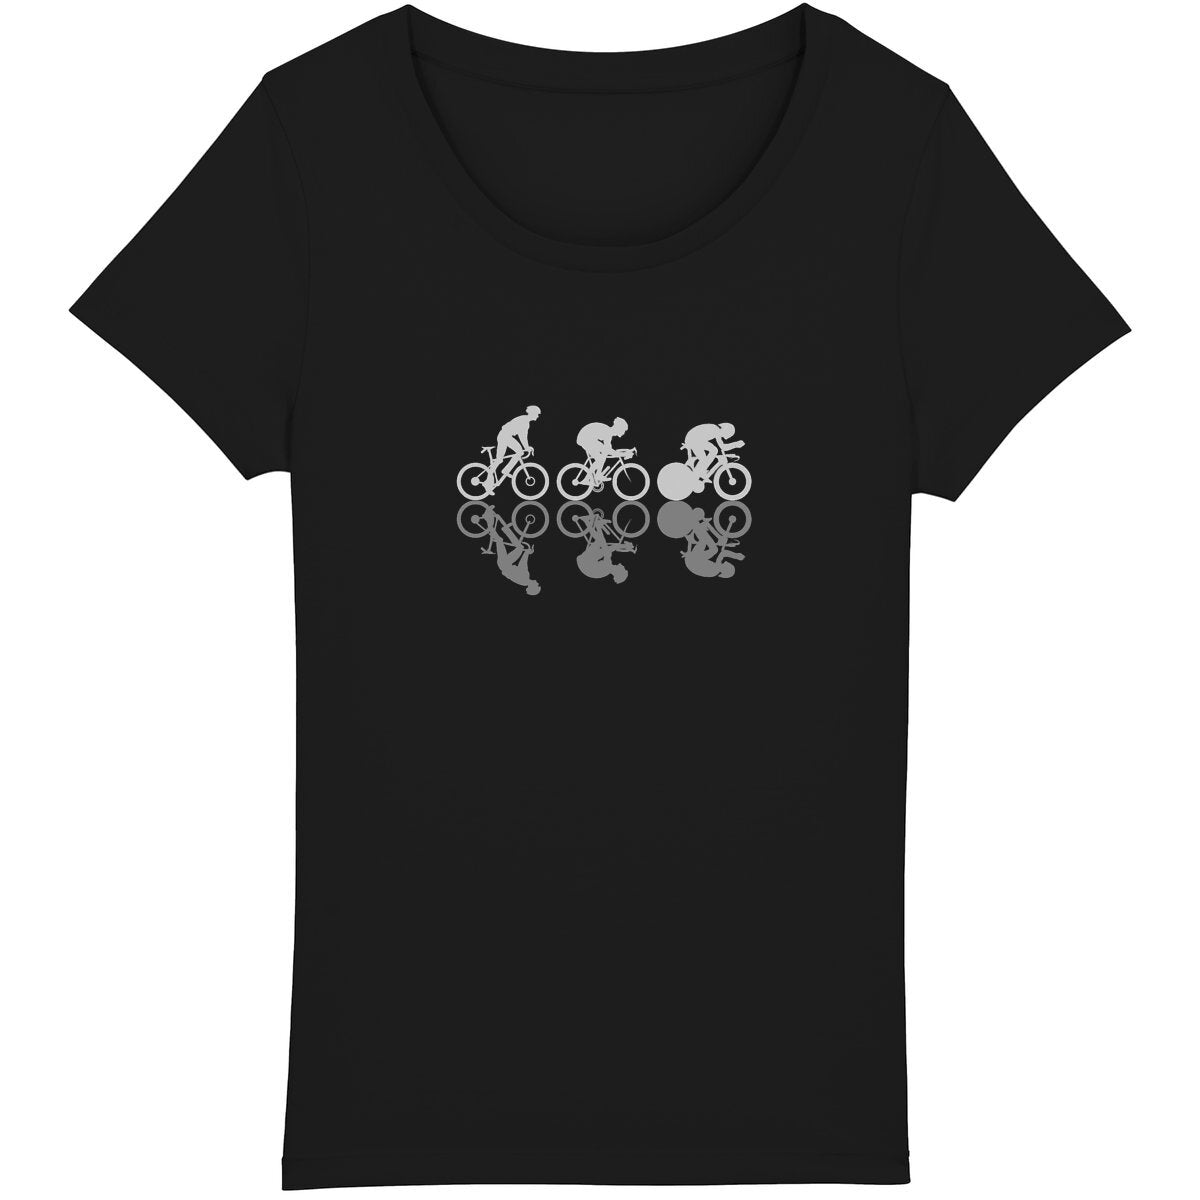 T-shirt sportif coton bio avec design cyclistes pour passionnées de vélo